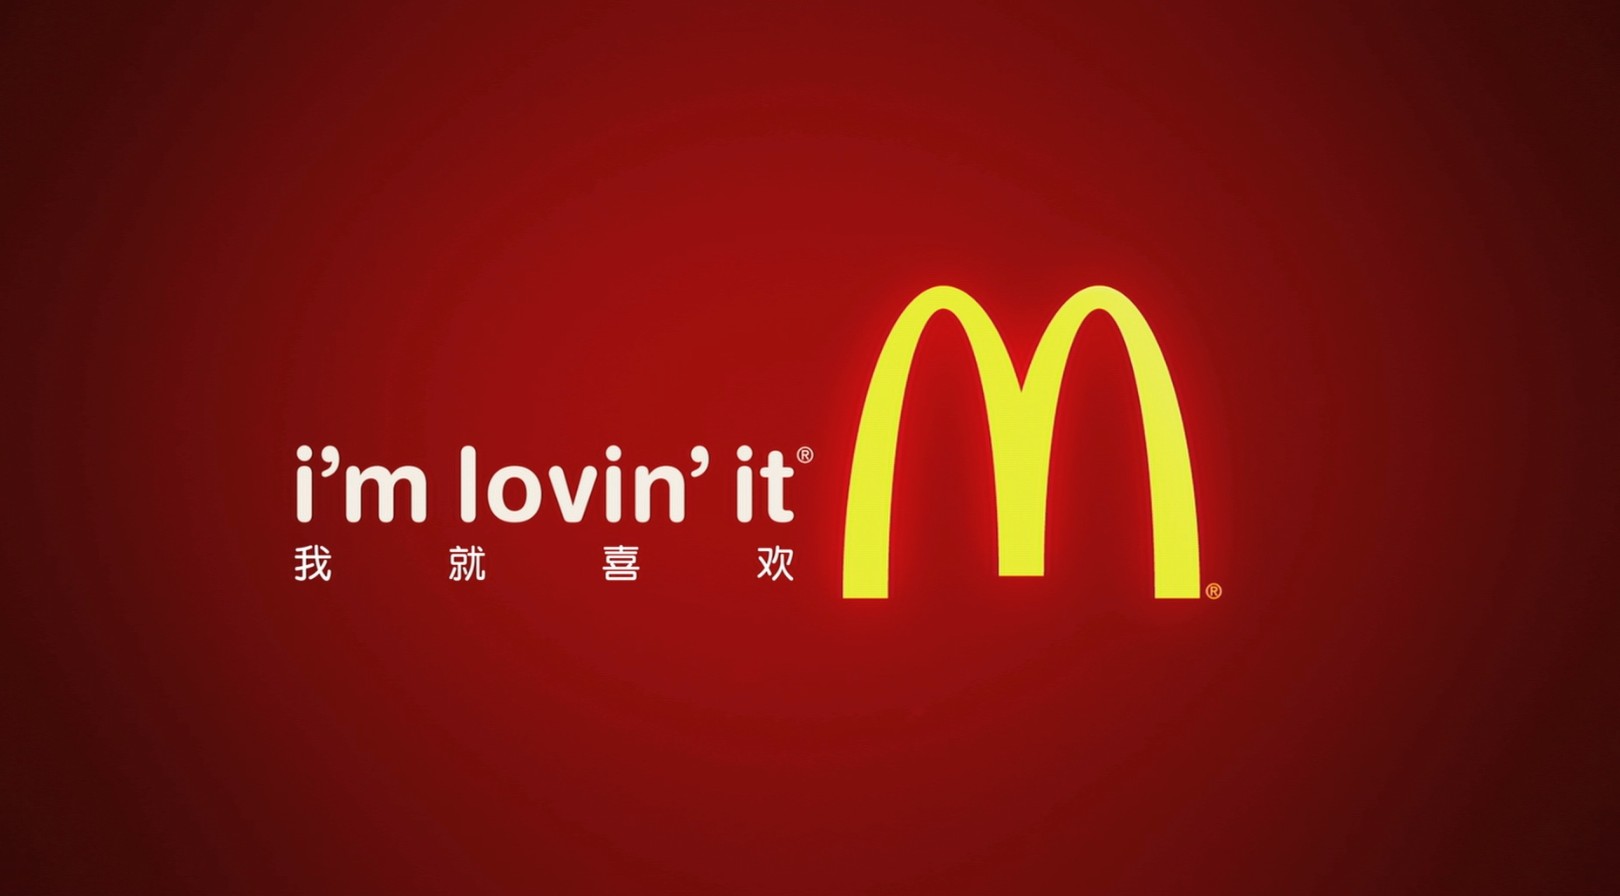 广告片-麦当劳《鸡肉篇》 